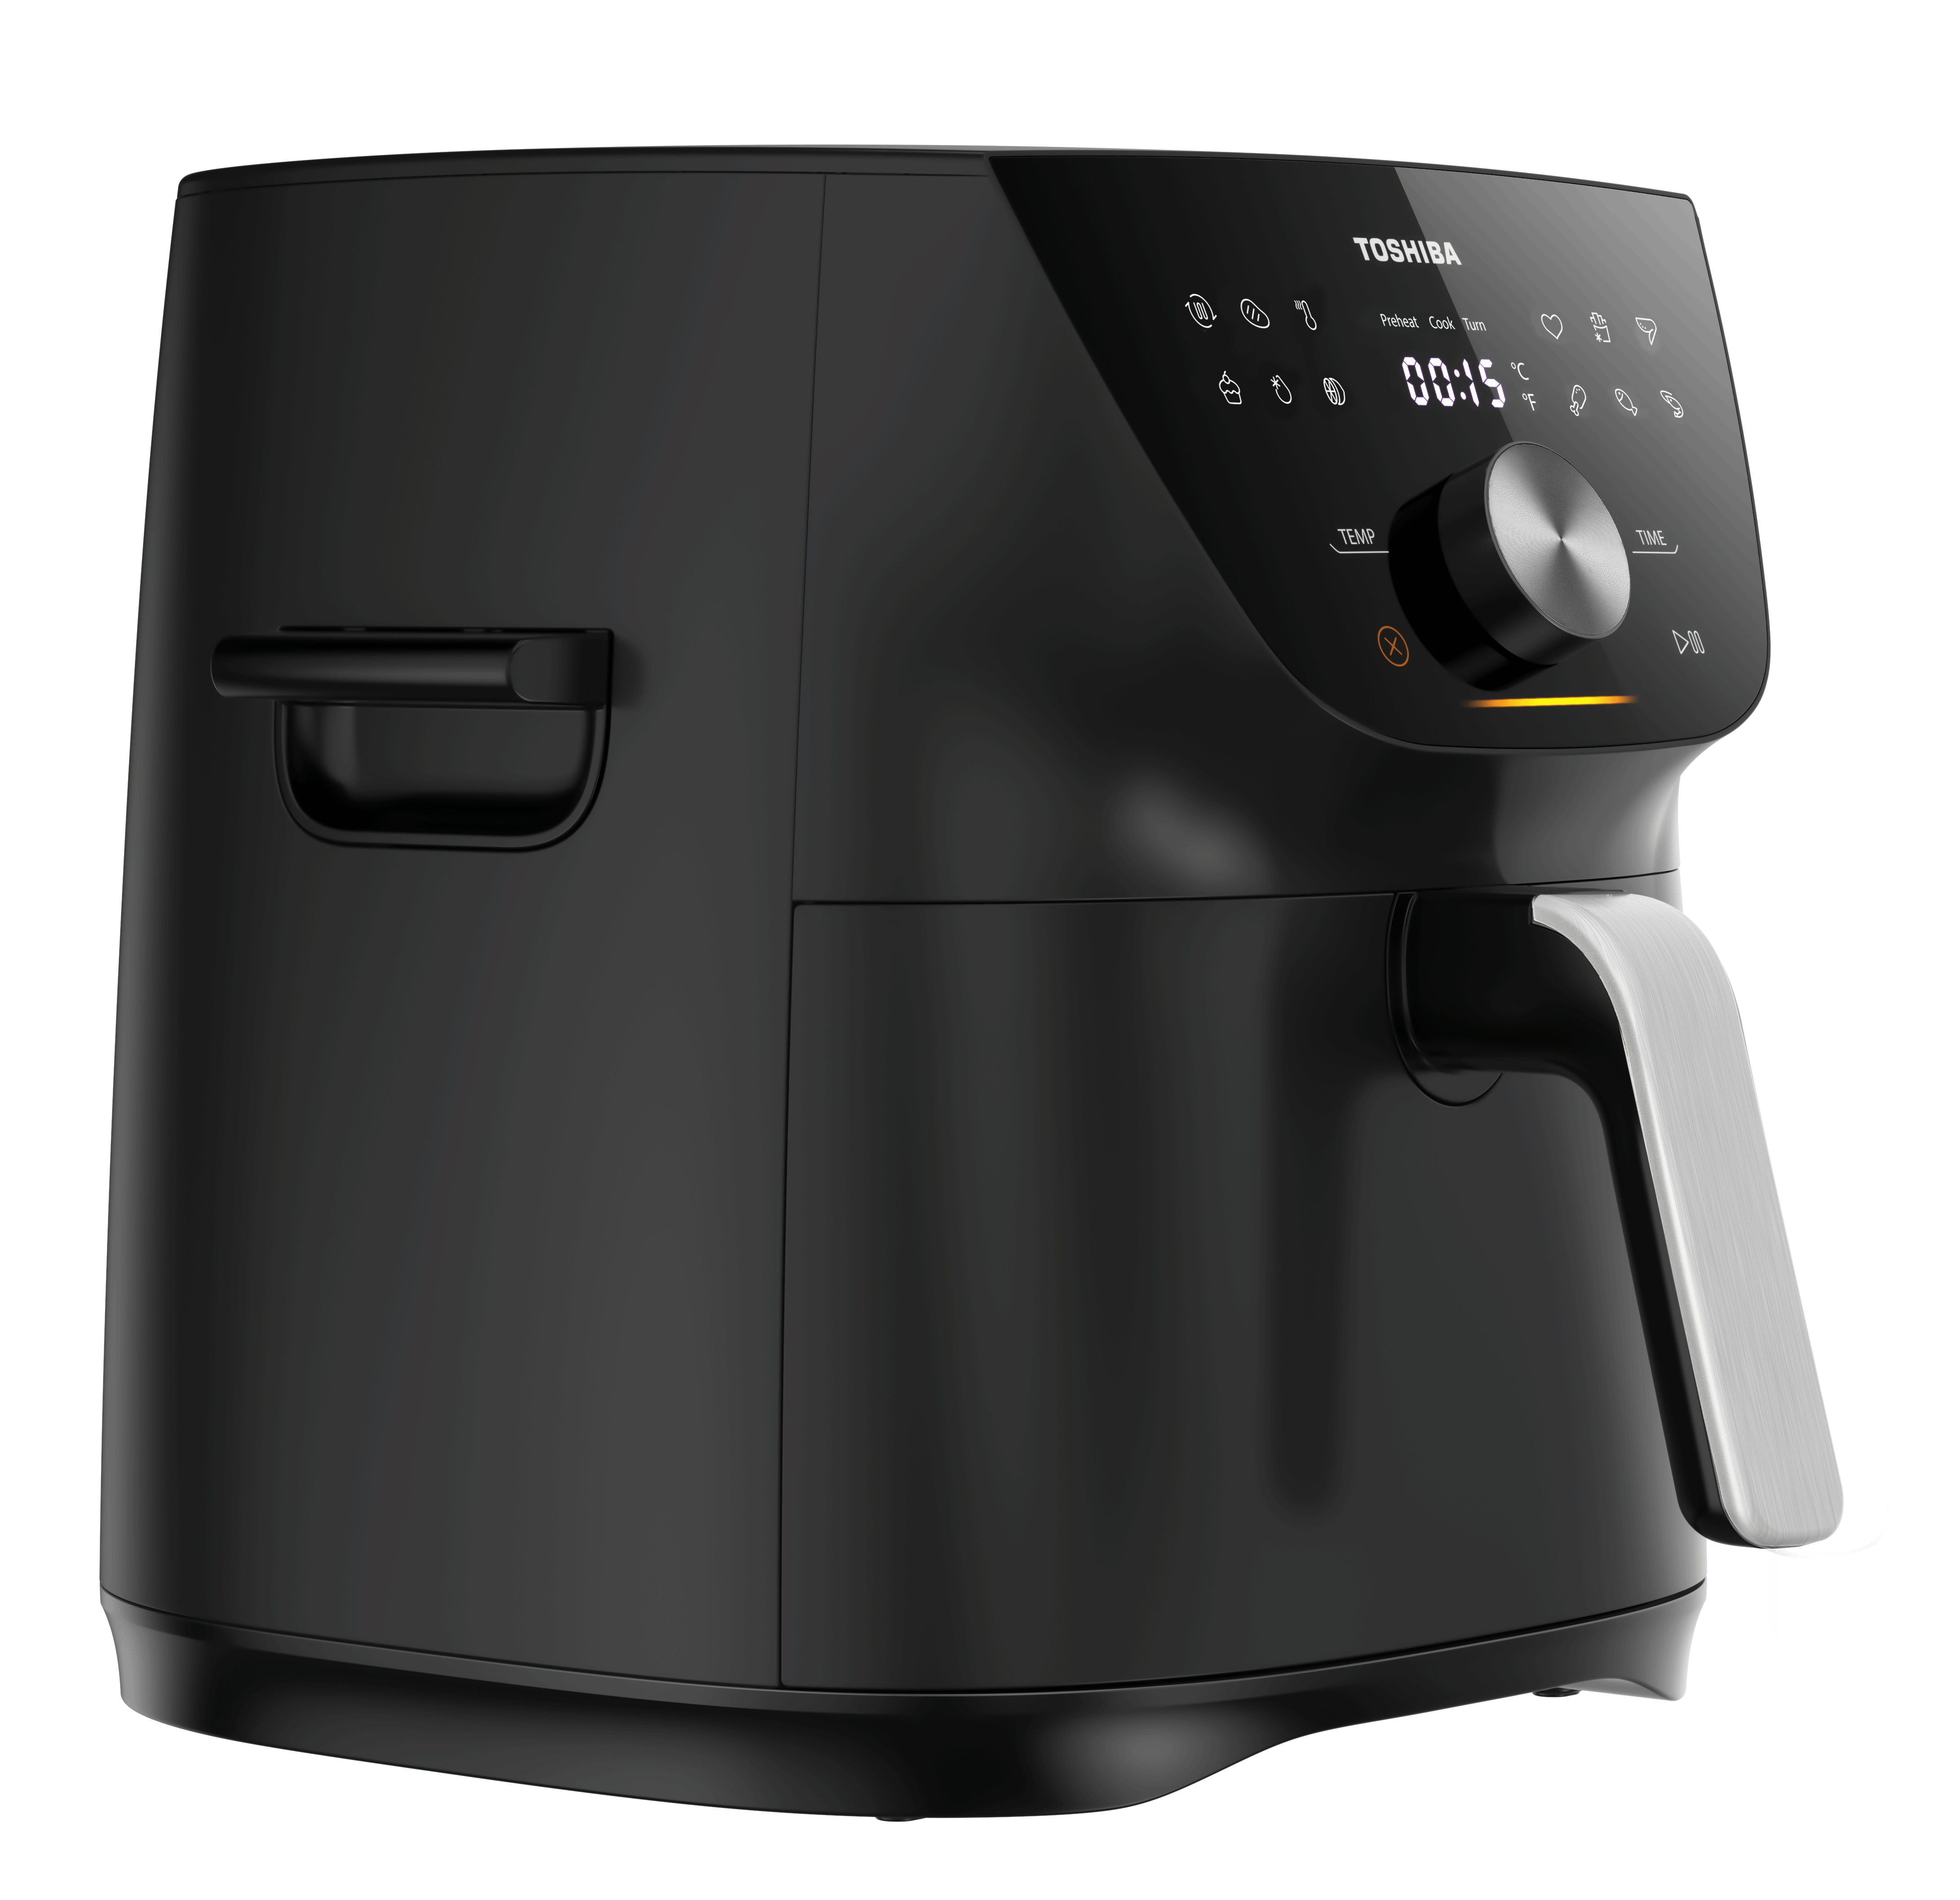 Digital Air Fryer - 7.4 Liter Capacity